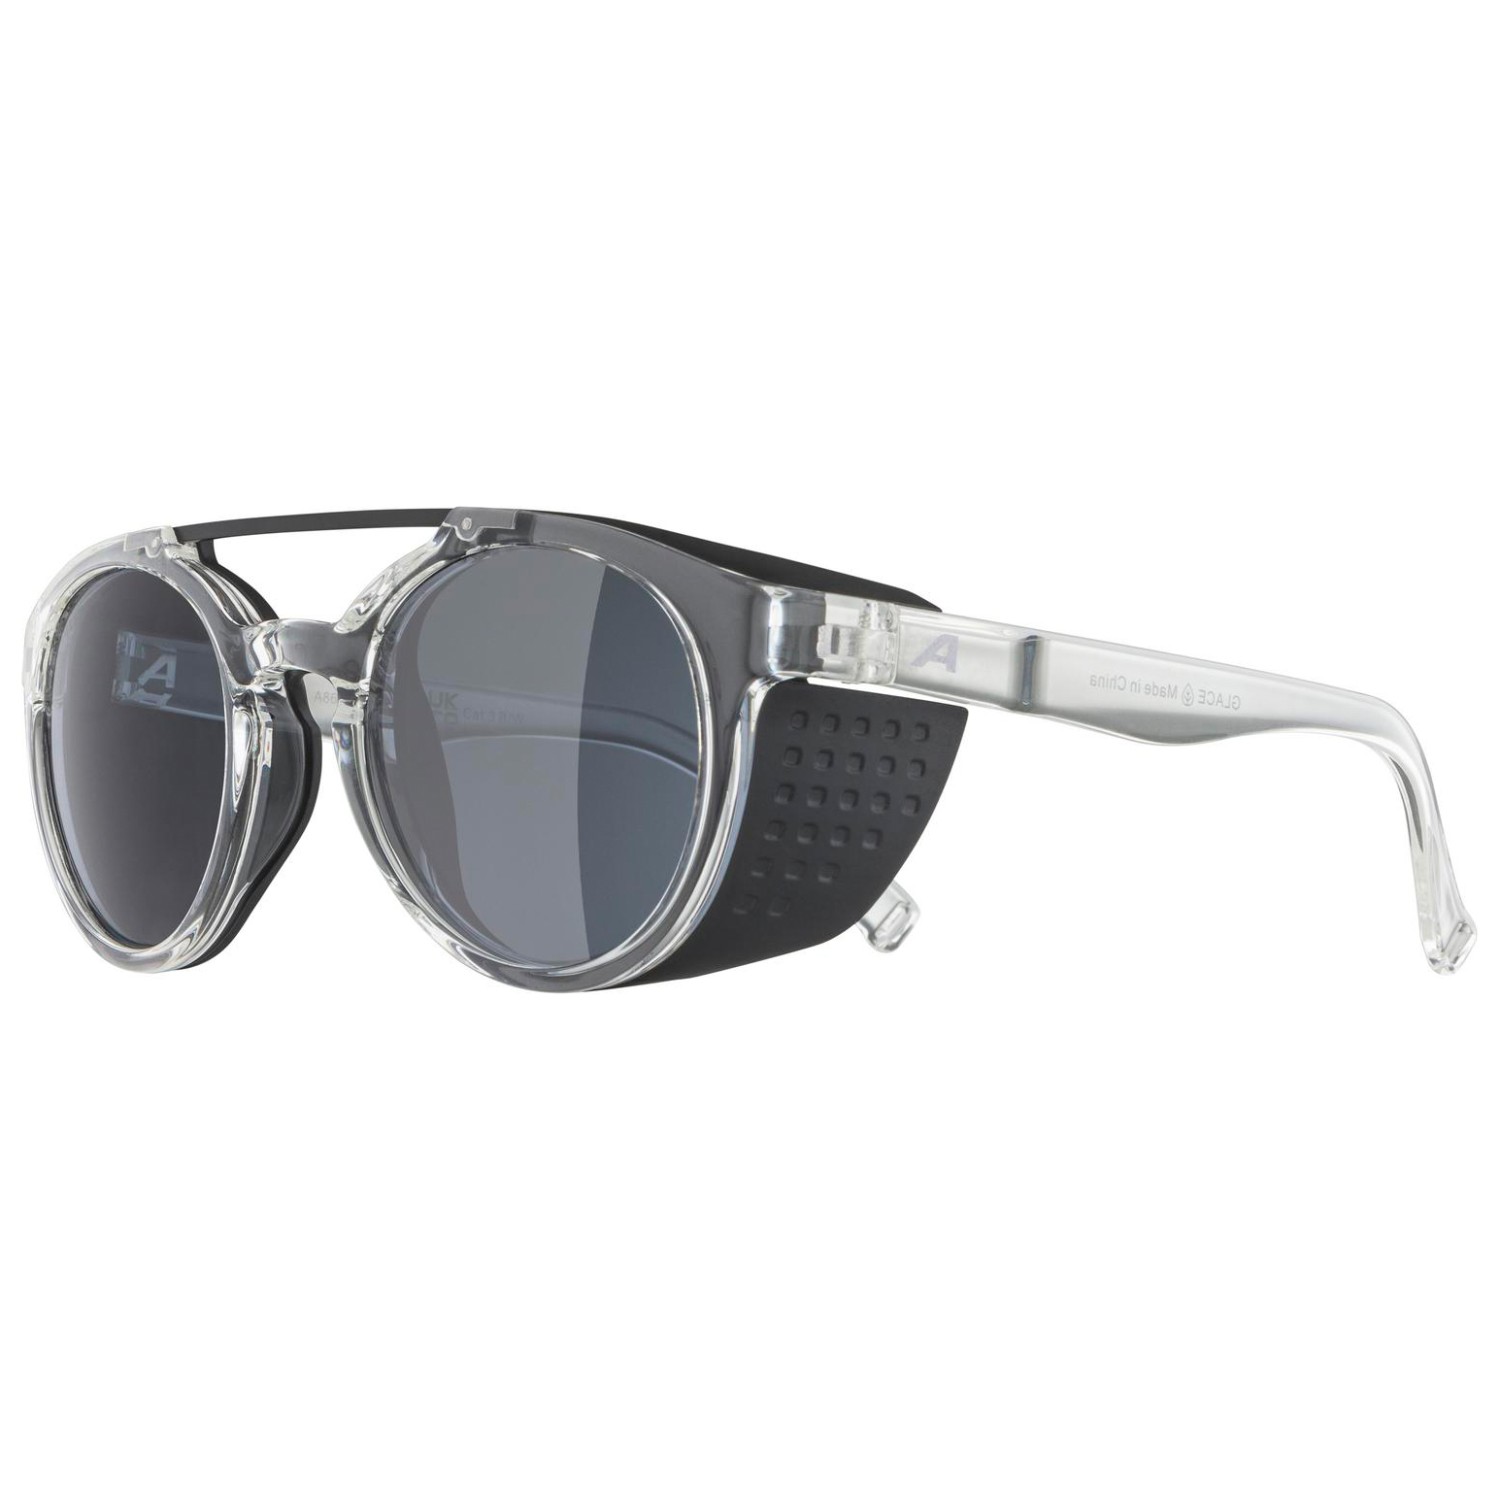 Солнцезащитные очки Alpina Glace Mirror Cat 3, цвет Transparent Gloss солнцезащитные очки adidas sp0083 mirror cat 3 цвет crystal